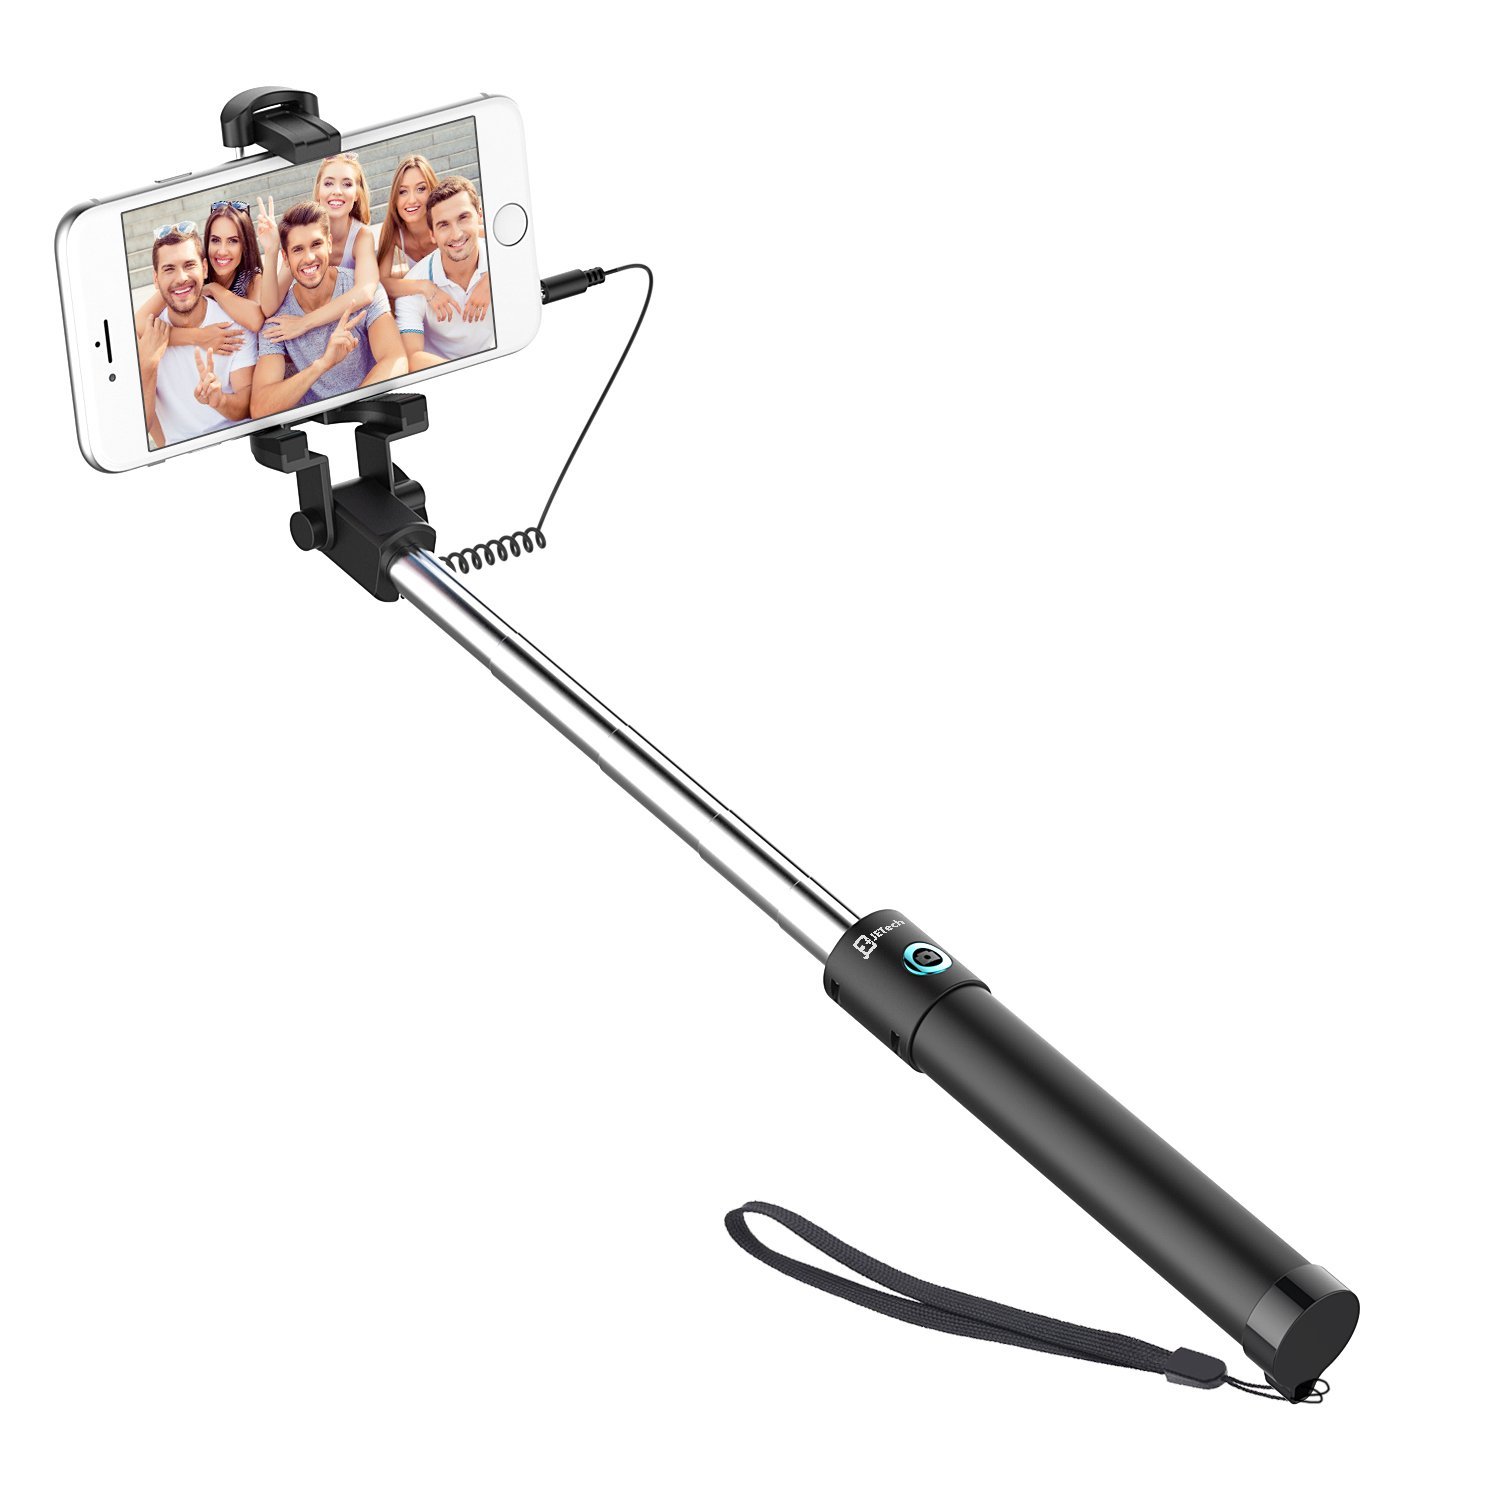 JETech Battery Free Selfie Stick Extendable Cable Control Self-portrait Monopod Pole